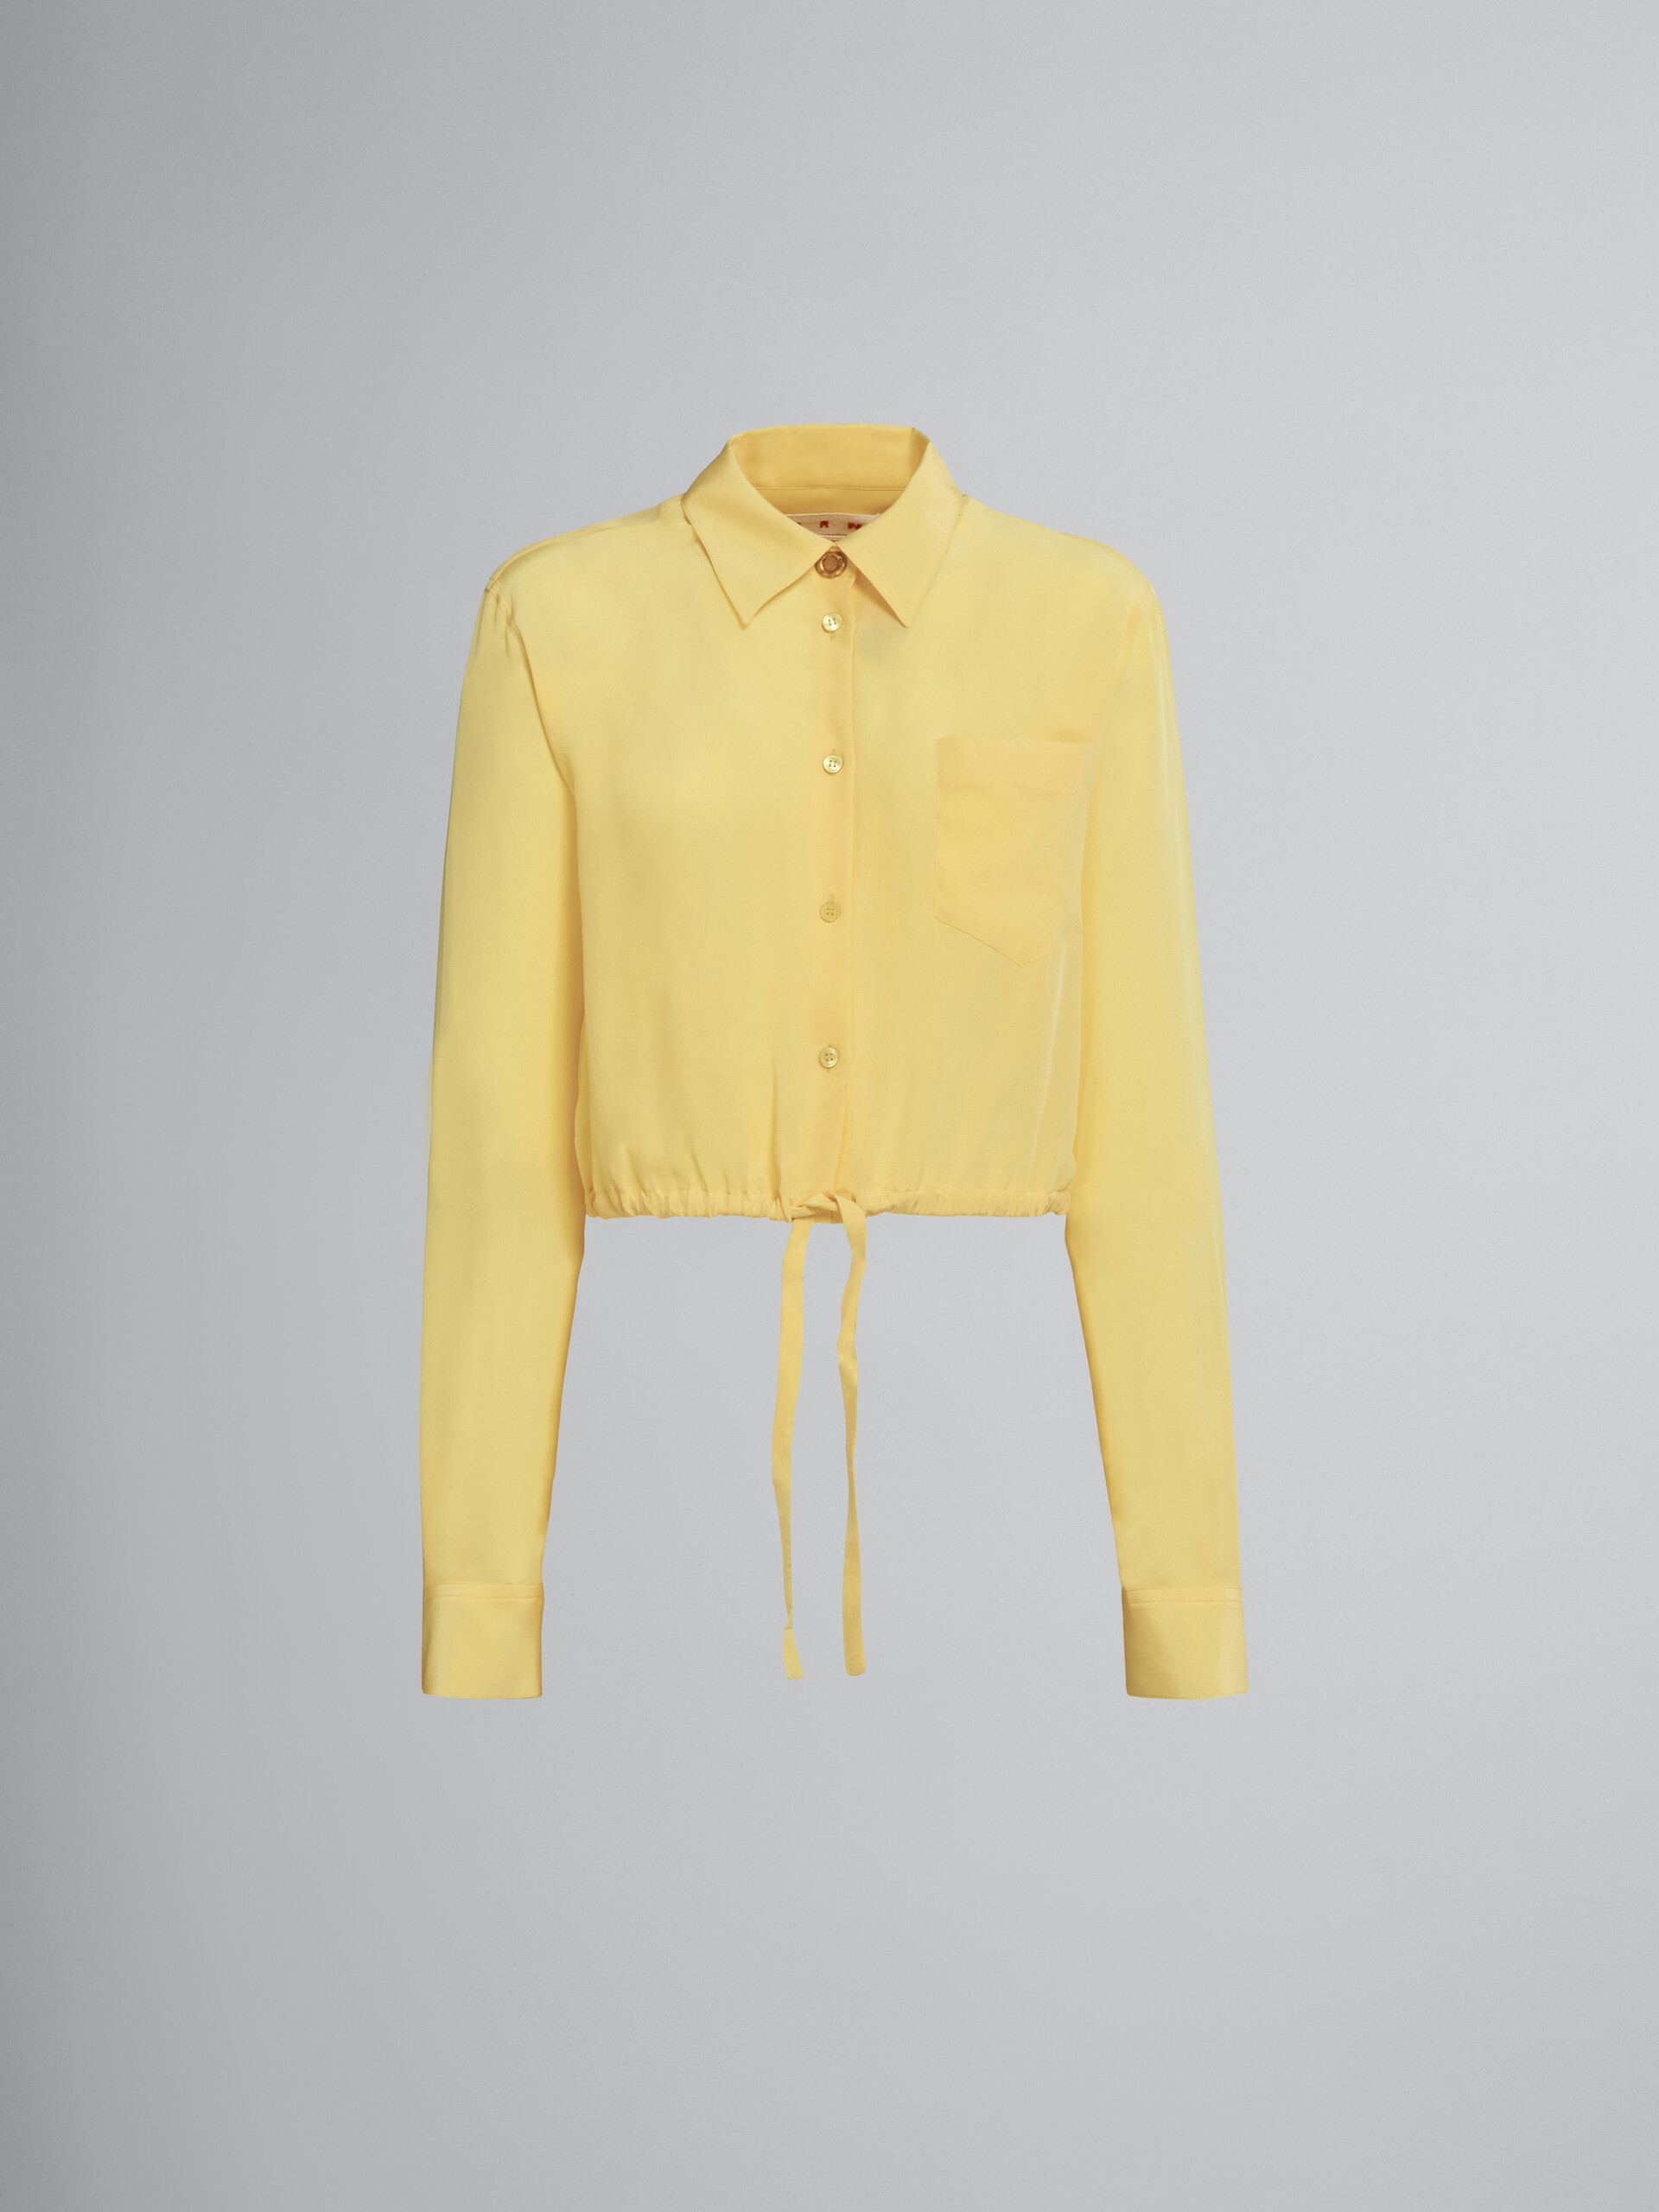 Chemise en soie jaune avec cordon coulissant - Chemises - Image 1